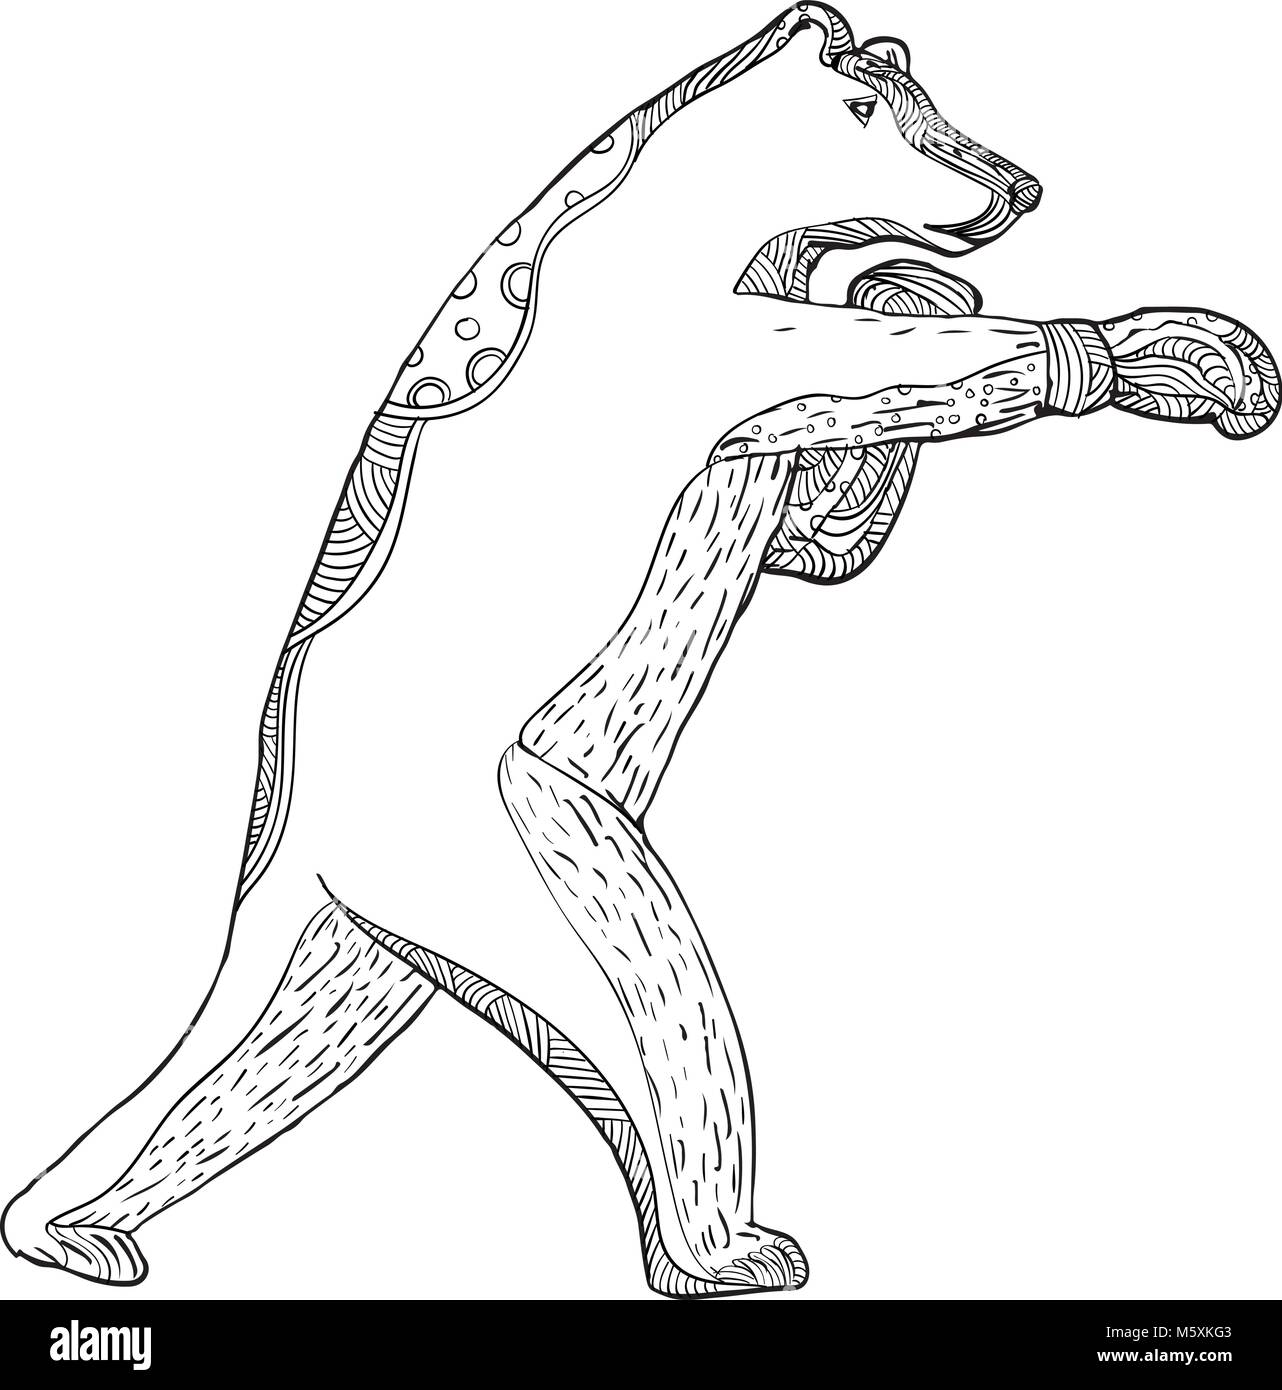 Doodle art Illustration eines Grizzlybären oder Braunbär boxer Boxen von der Seite in Schwarz und Weiß gesehen in Mandala Stil. Stock Vektor